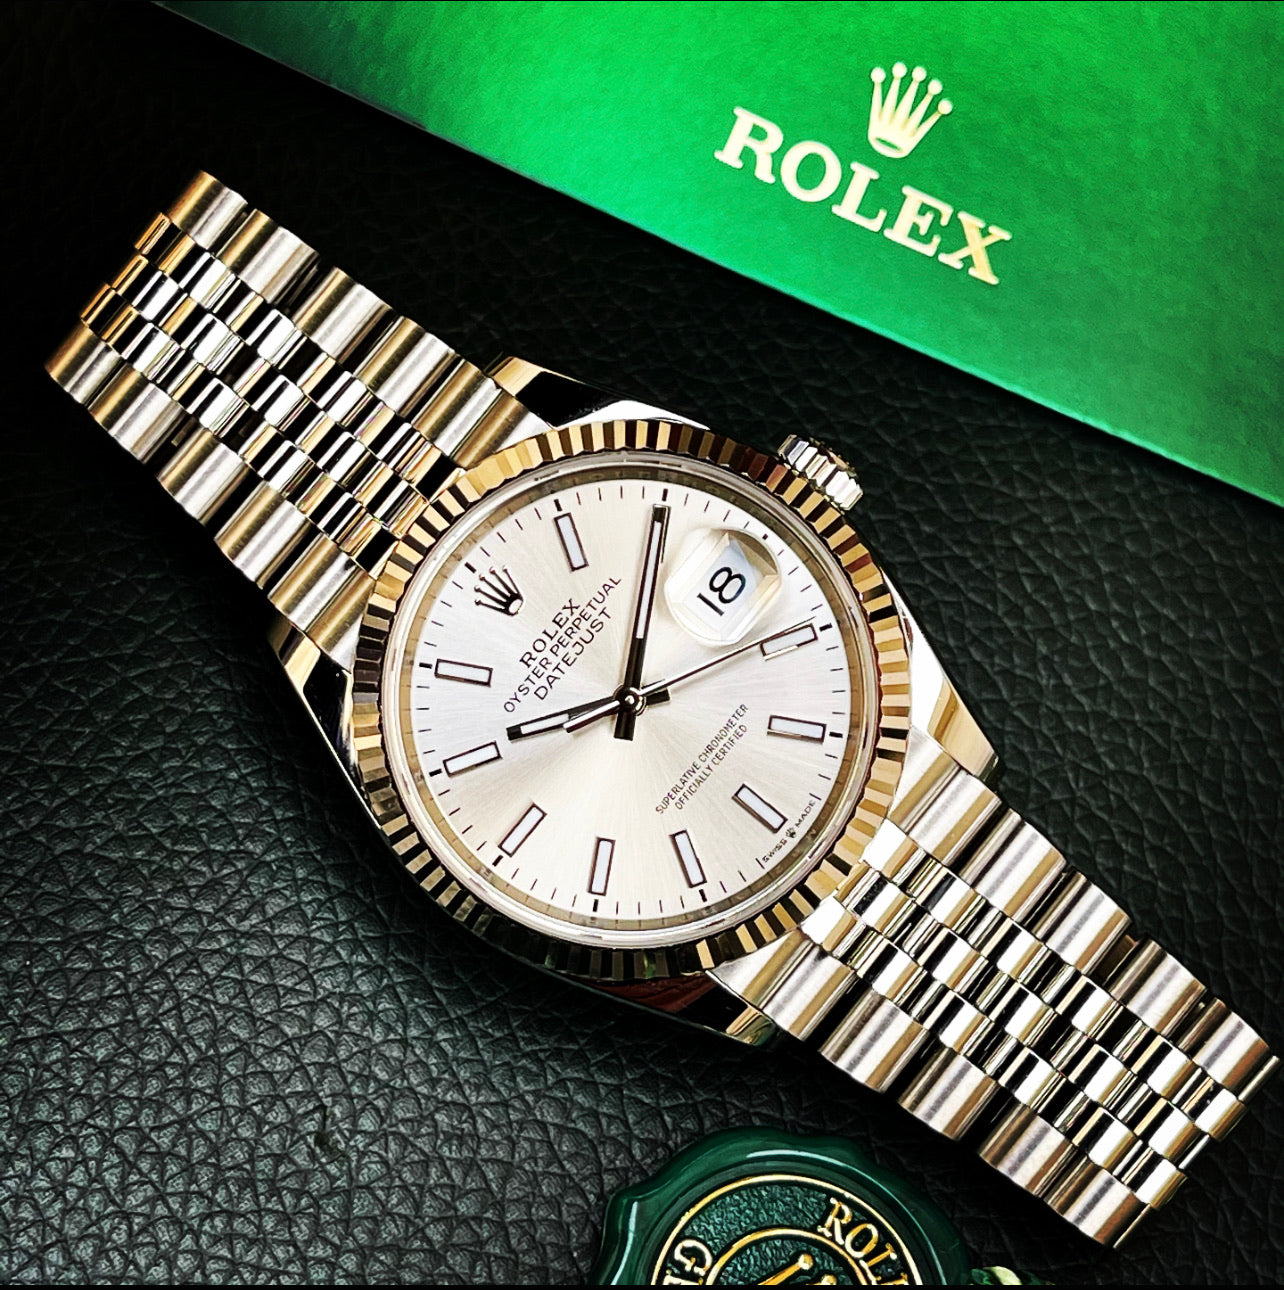 Rolex Datejust 36 réf 126234.